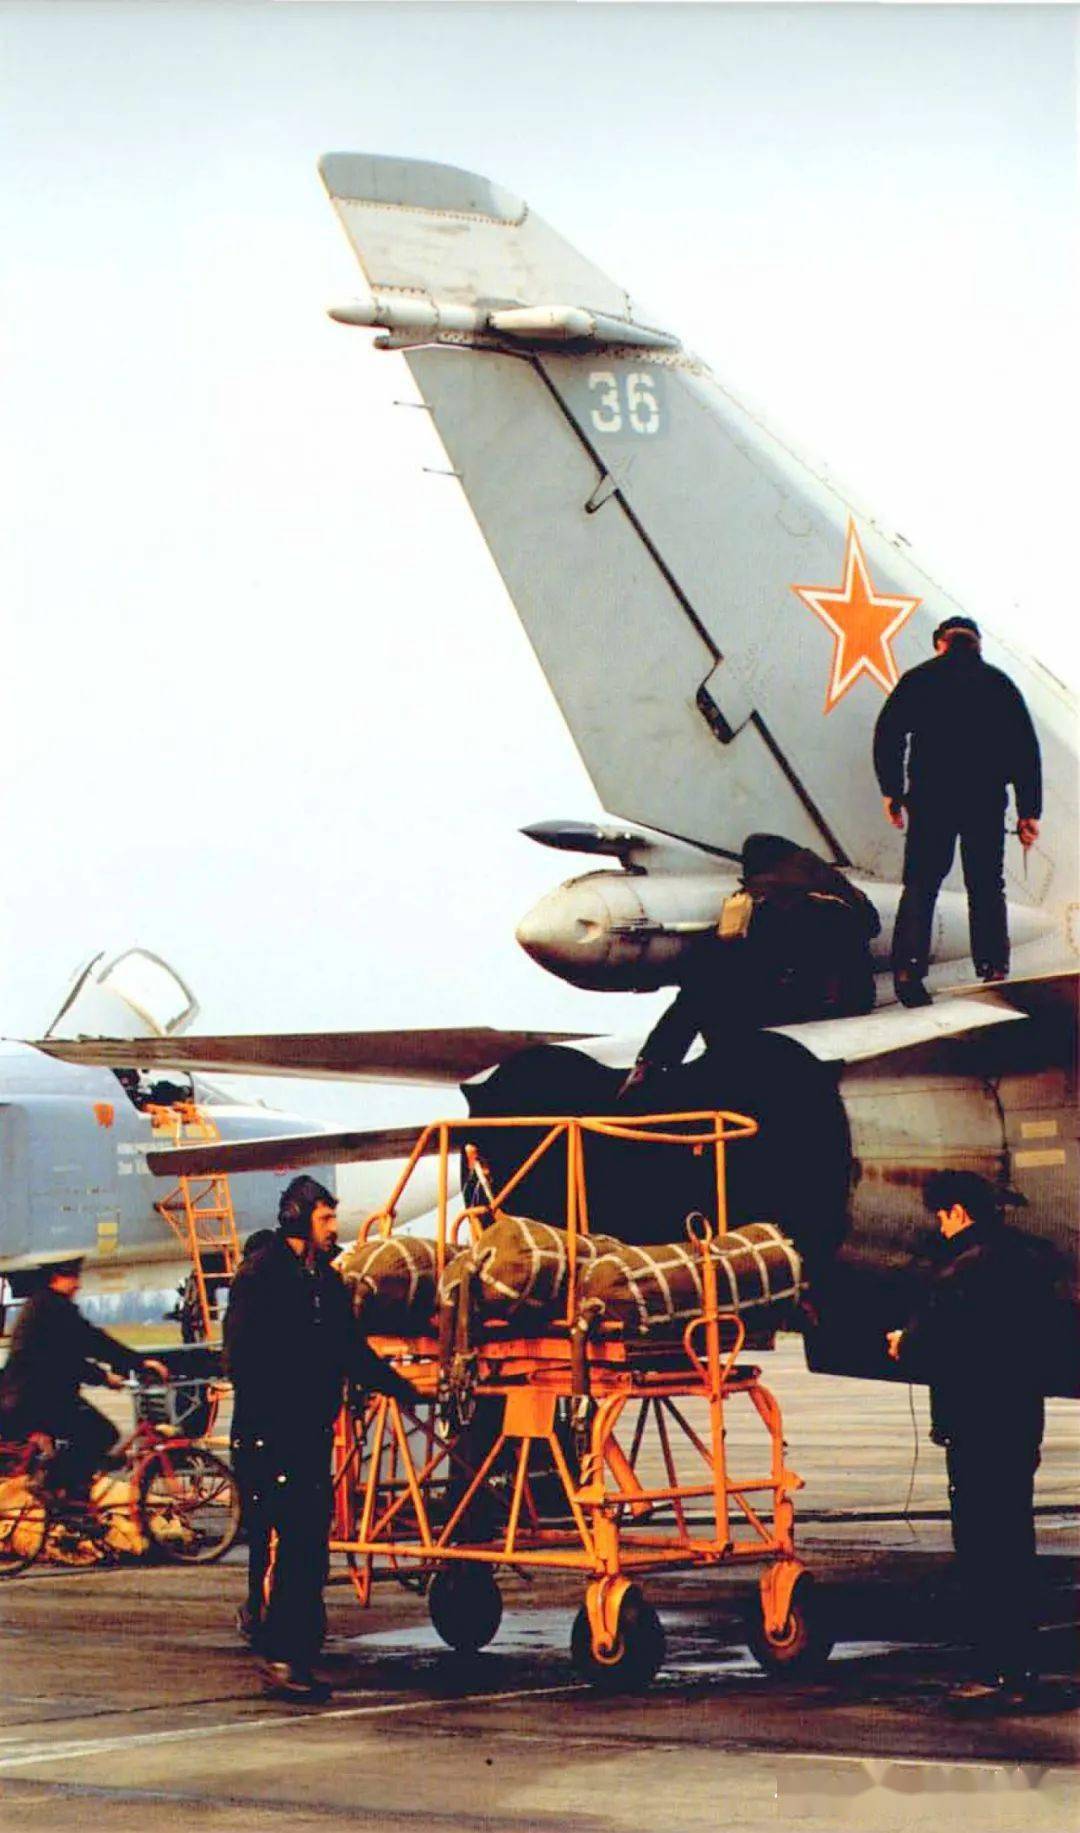 俄罗斯军机设计三巨头苏霍伊米格图波列夫三强击机